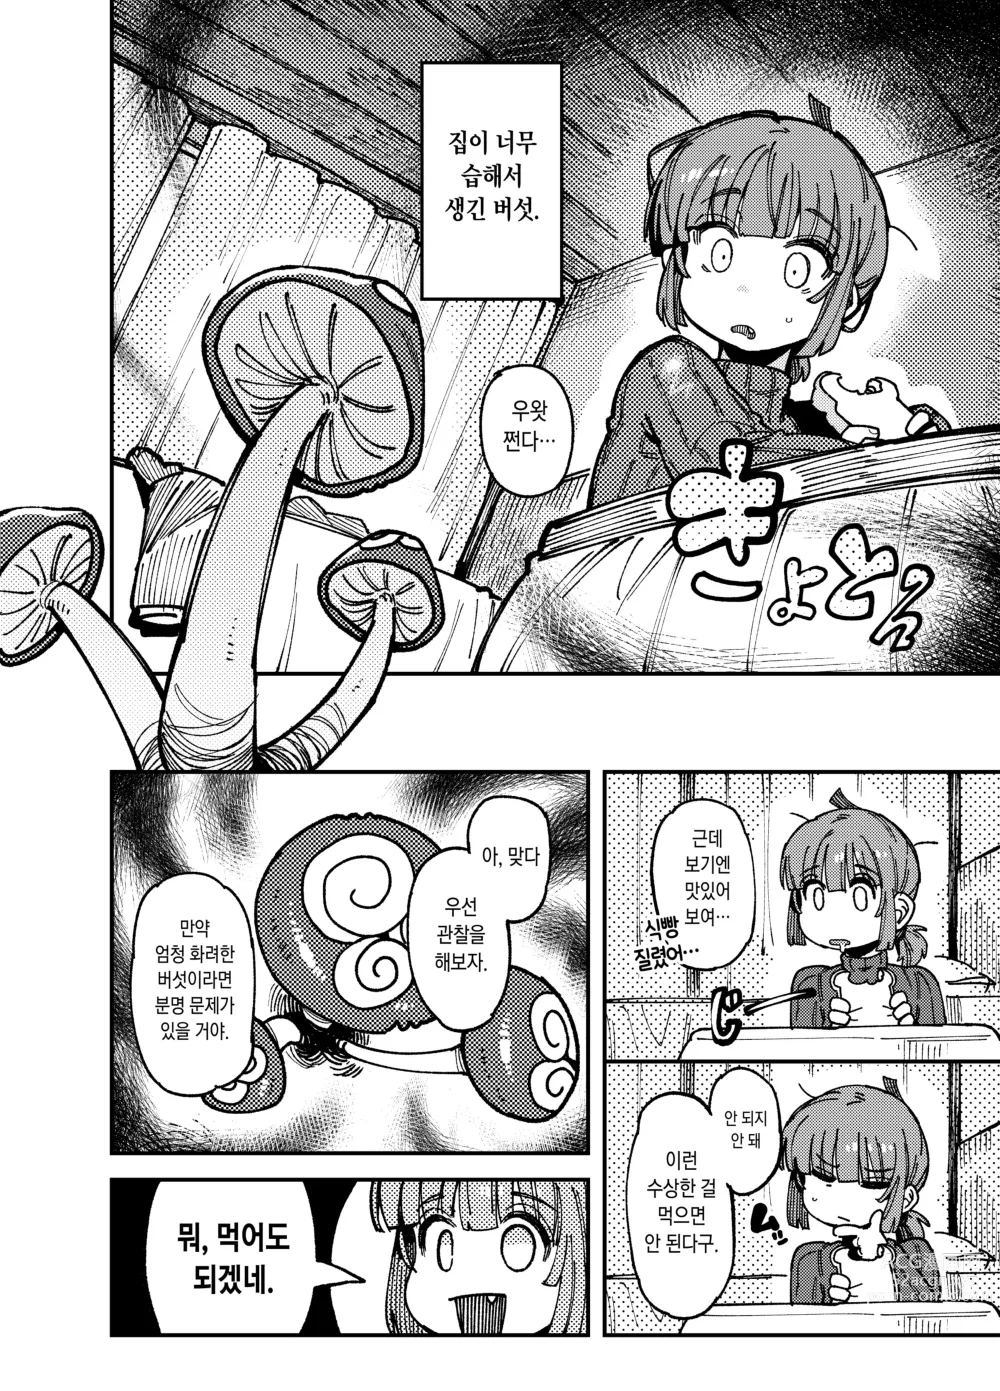 Page 3 of doujinshi 집이 너무 습해서 생긴 환각을 유발하는 버섯을 잘못 먹고 발정난 뒤의 이야기